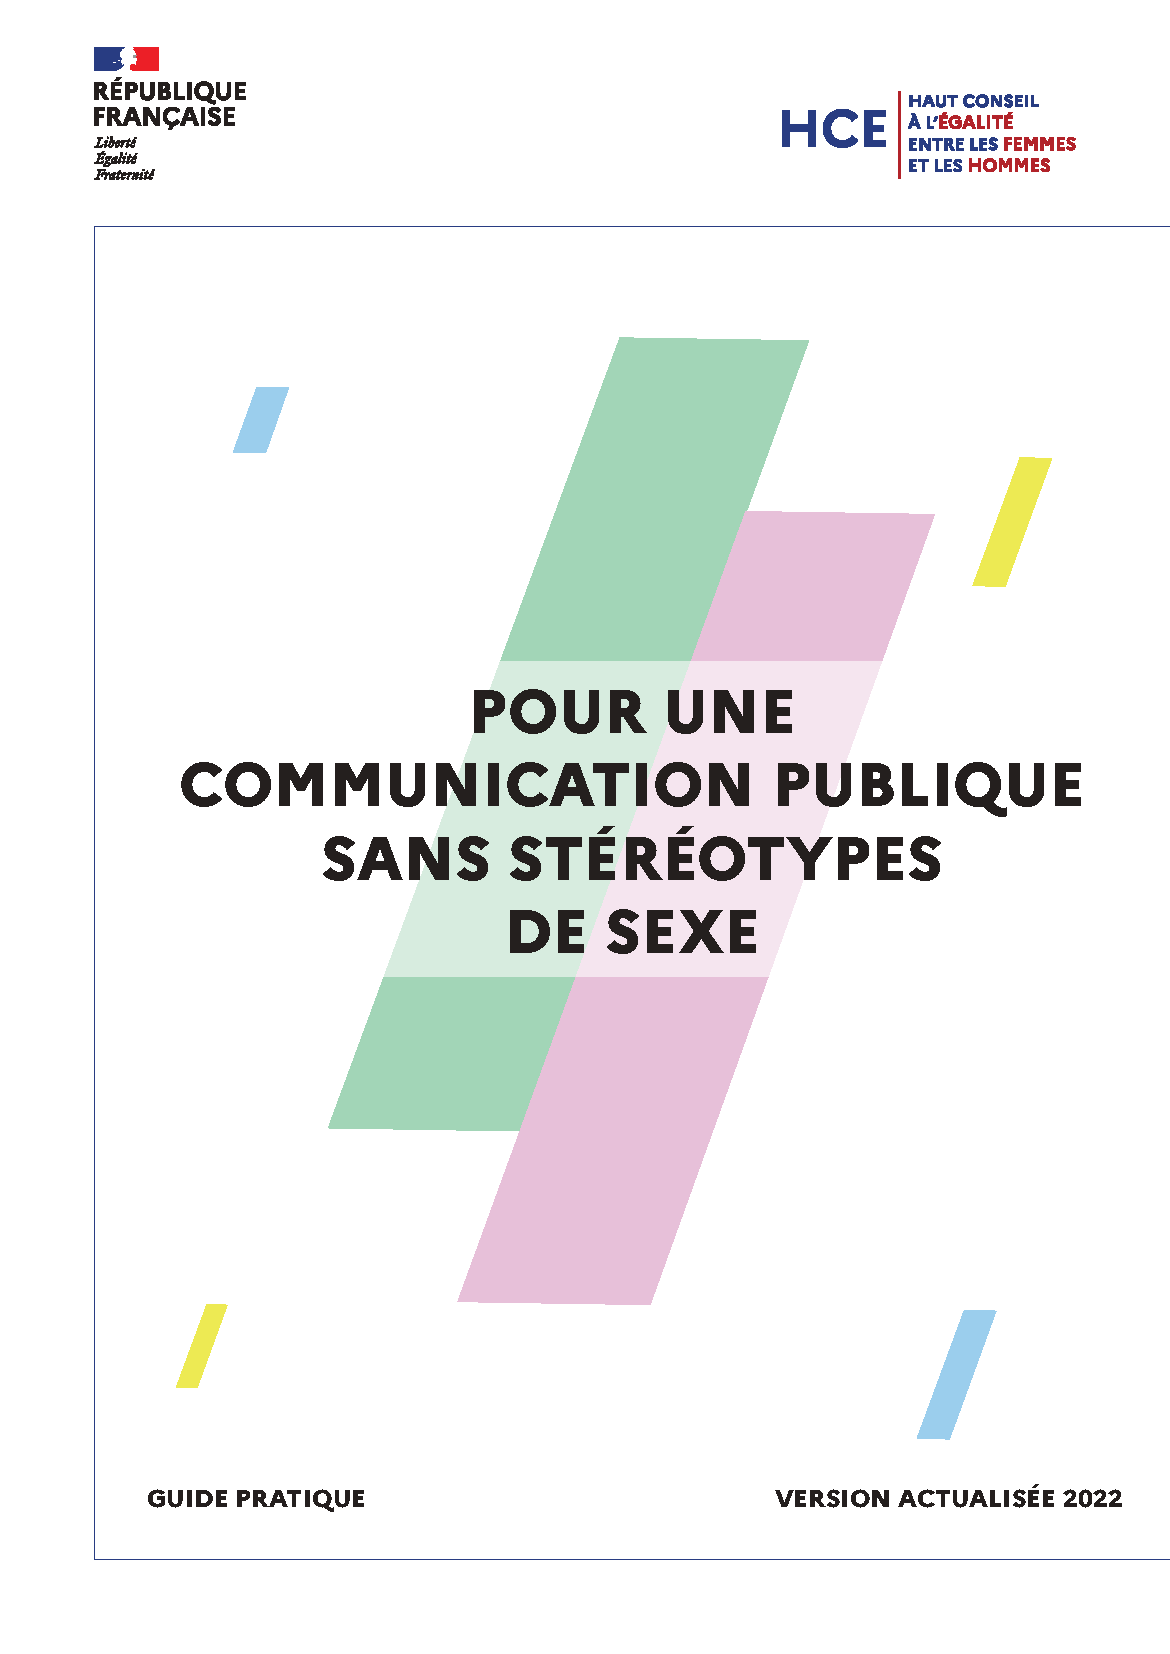 Guide « Pour une communication publique sans stéréotype de sexe » du HCE